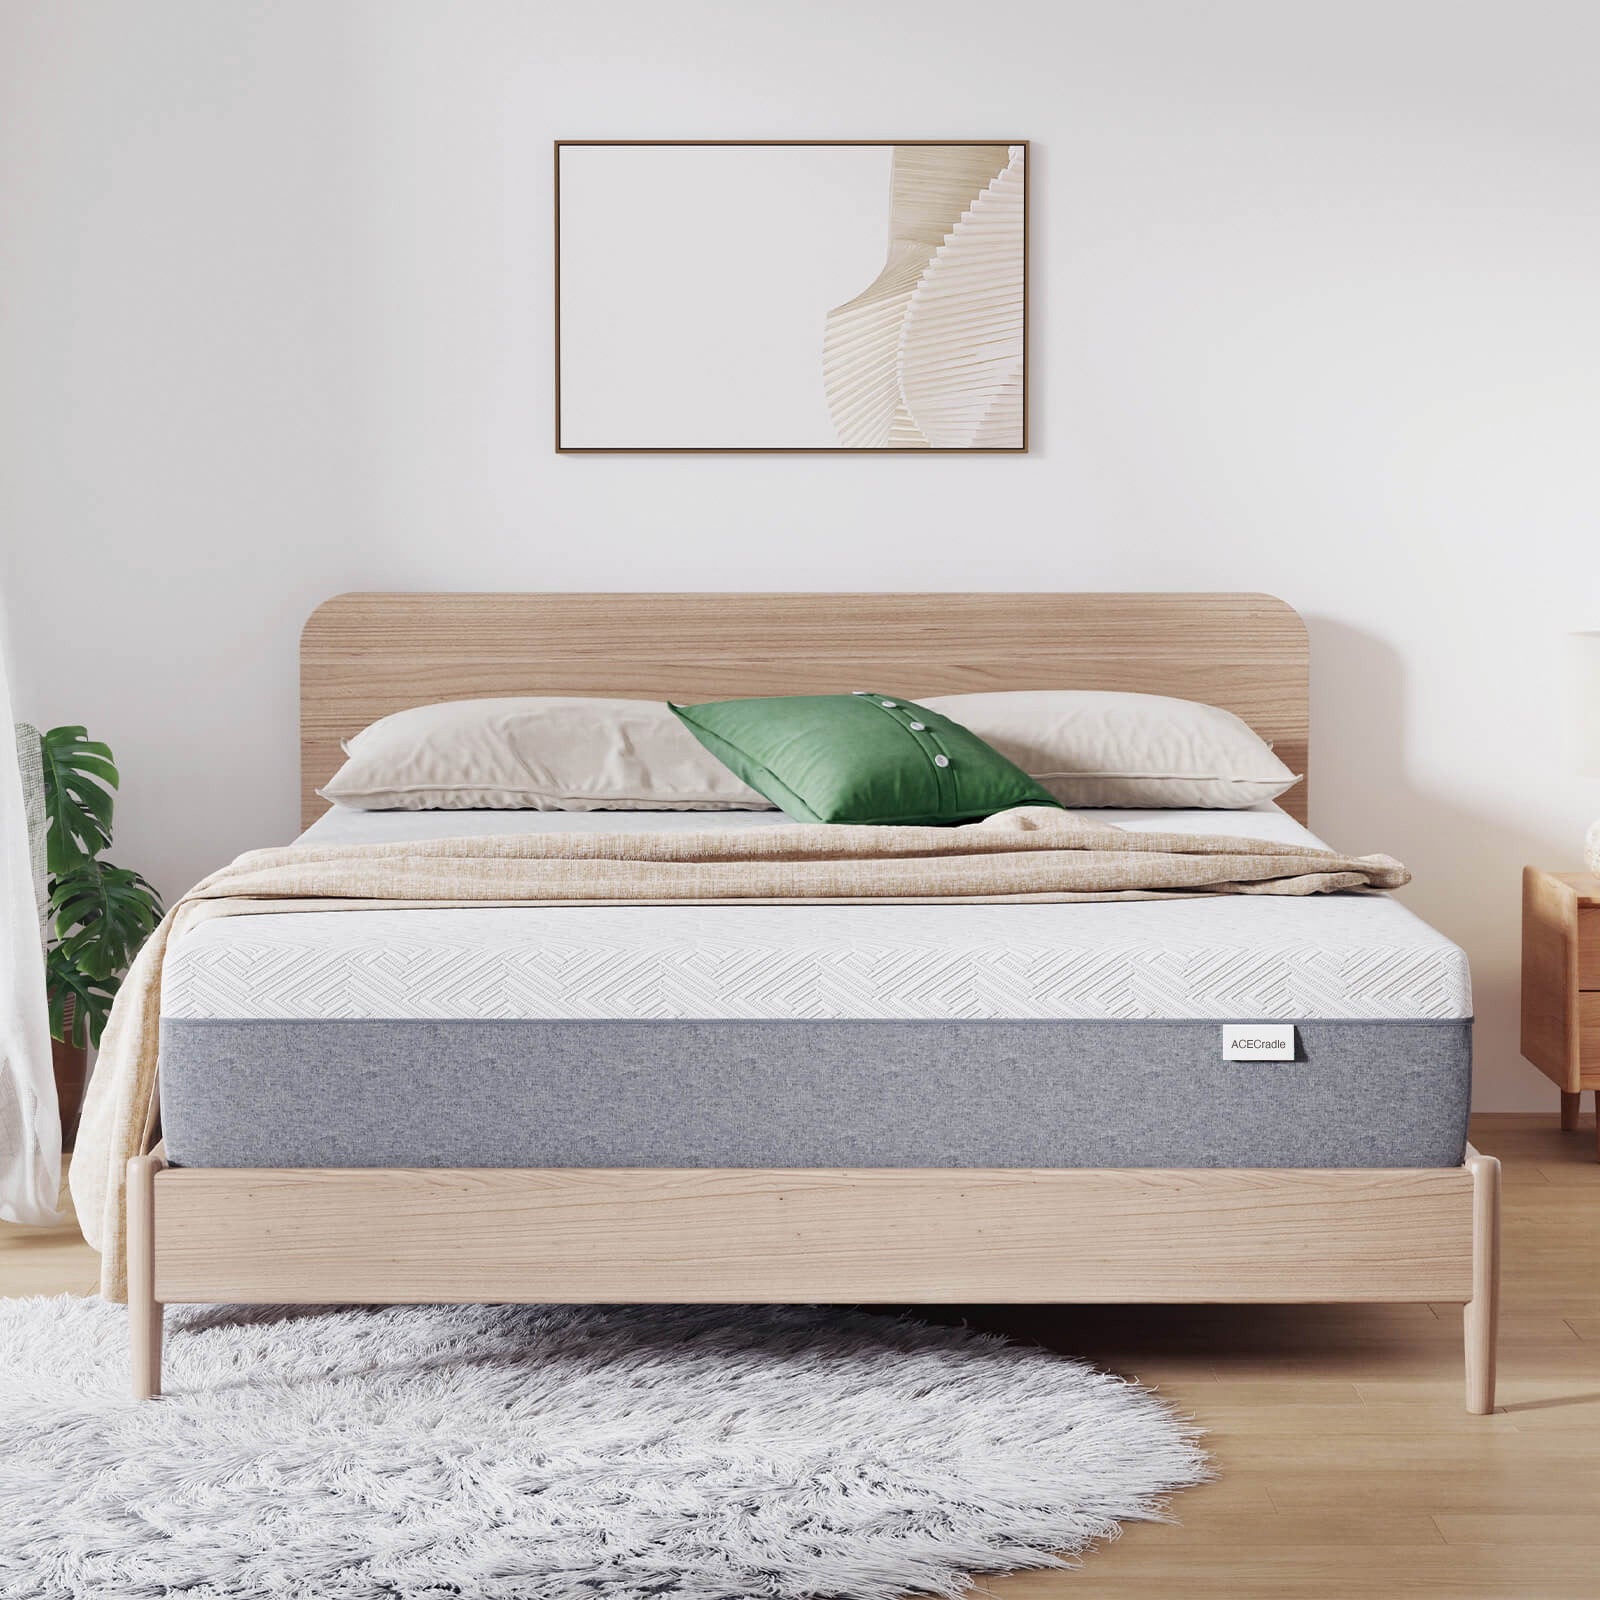 ACECradle™ Comfort Sleep Foam Mattress